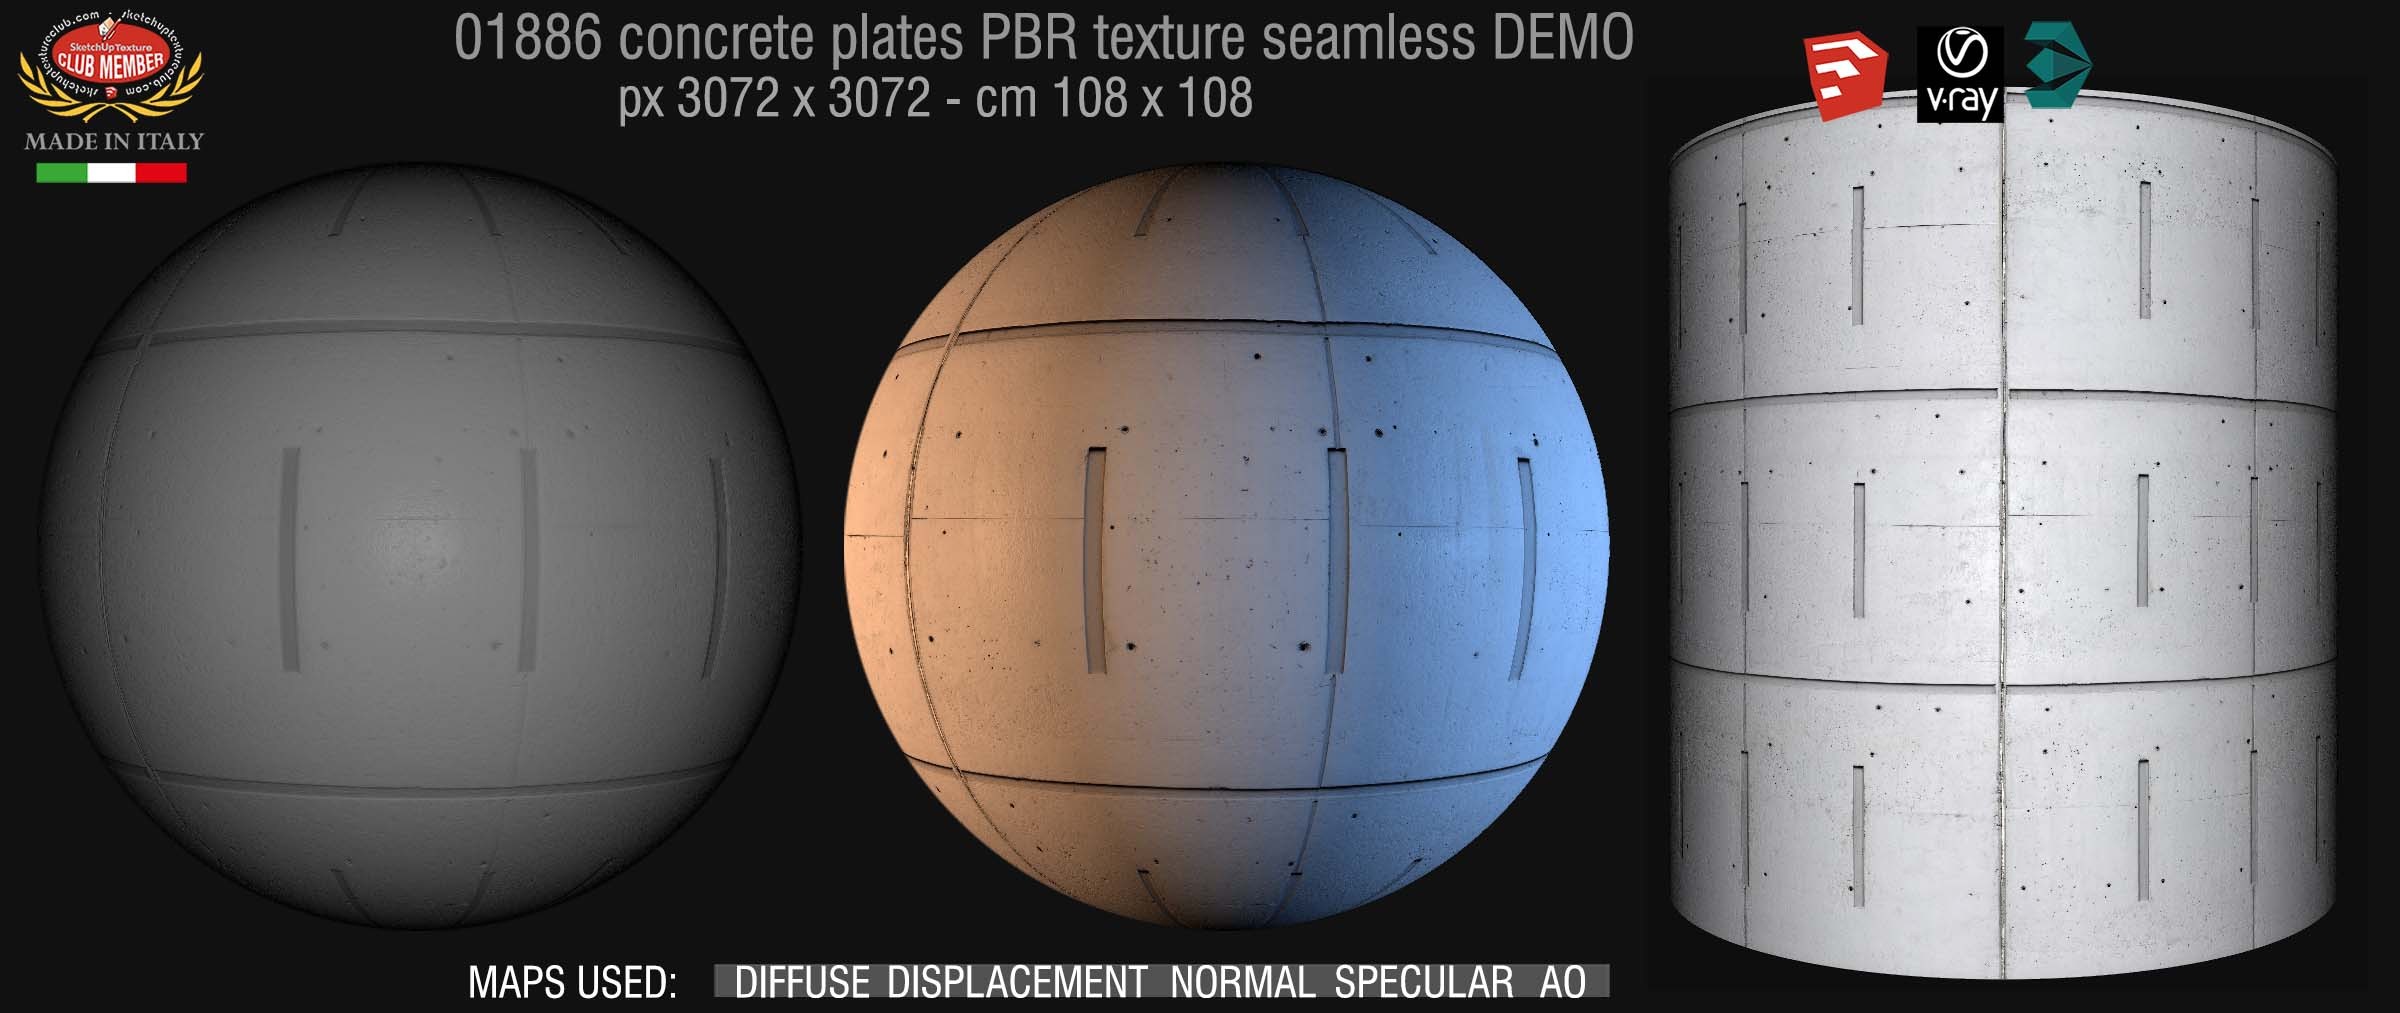 01886 tadao ando concrete plates PBR texture seamless DEMO